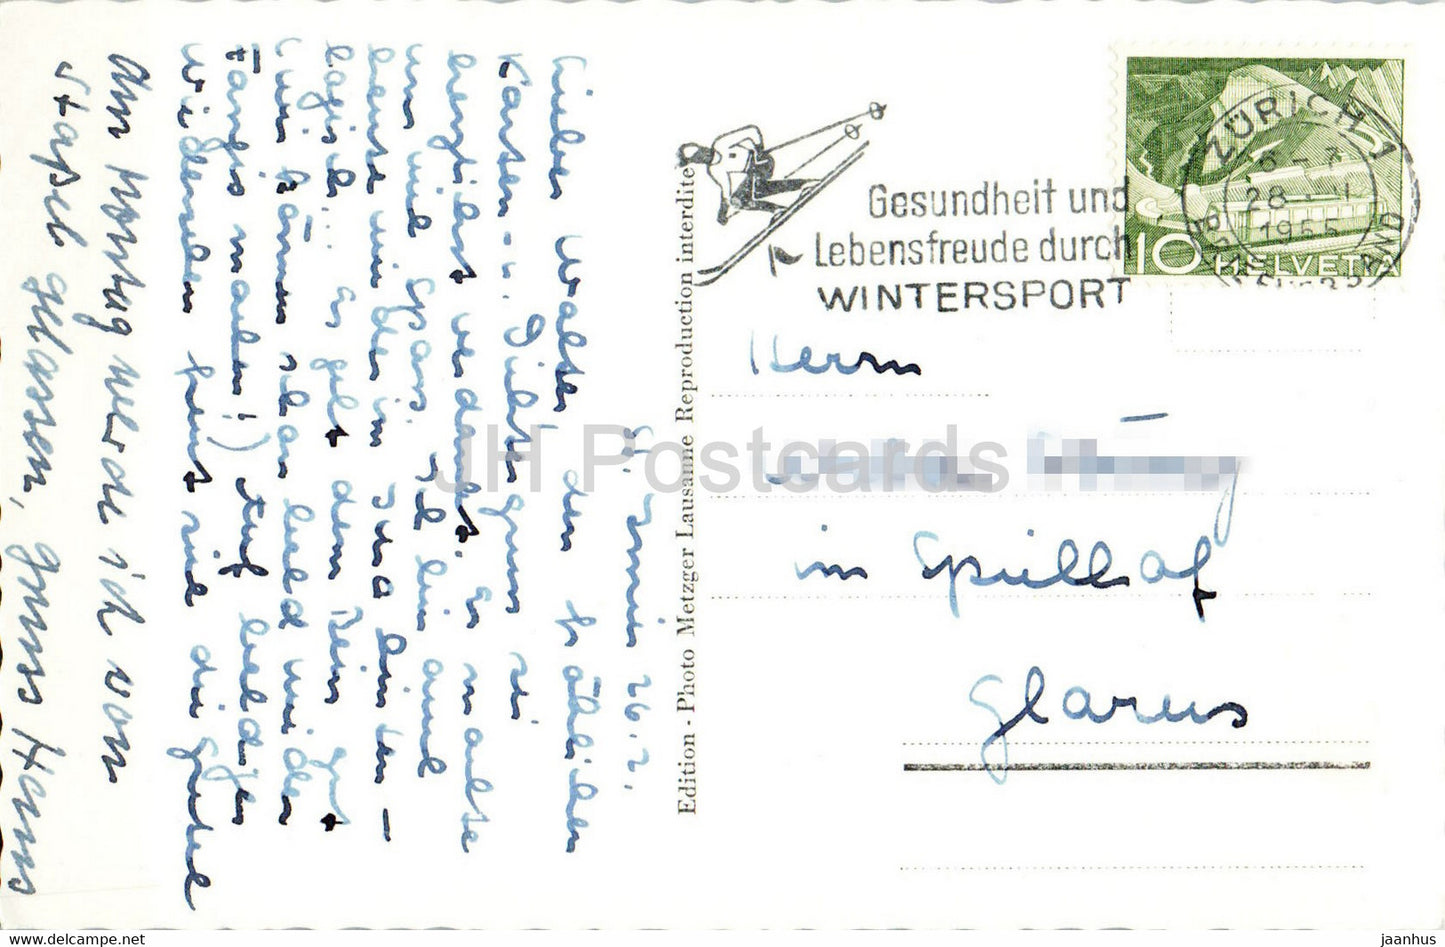 St. Imier - Combe Grede et Chasseral - 2661 - alte Postkarte - 1955 - Schweiz - gebraucht